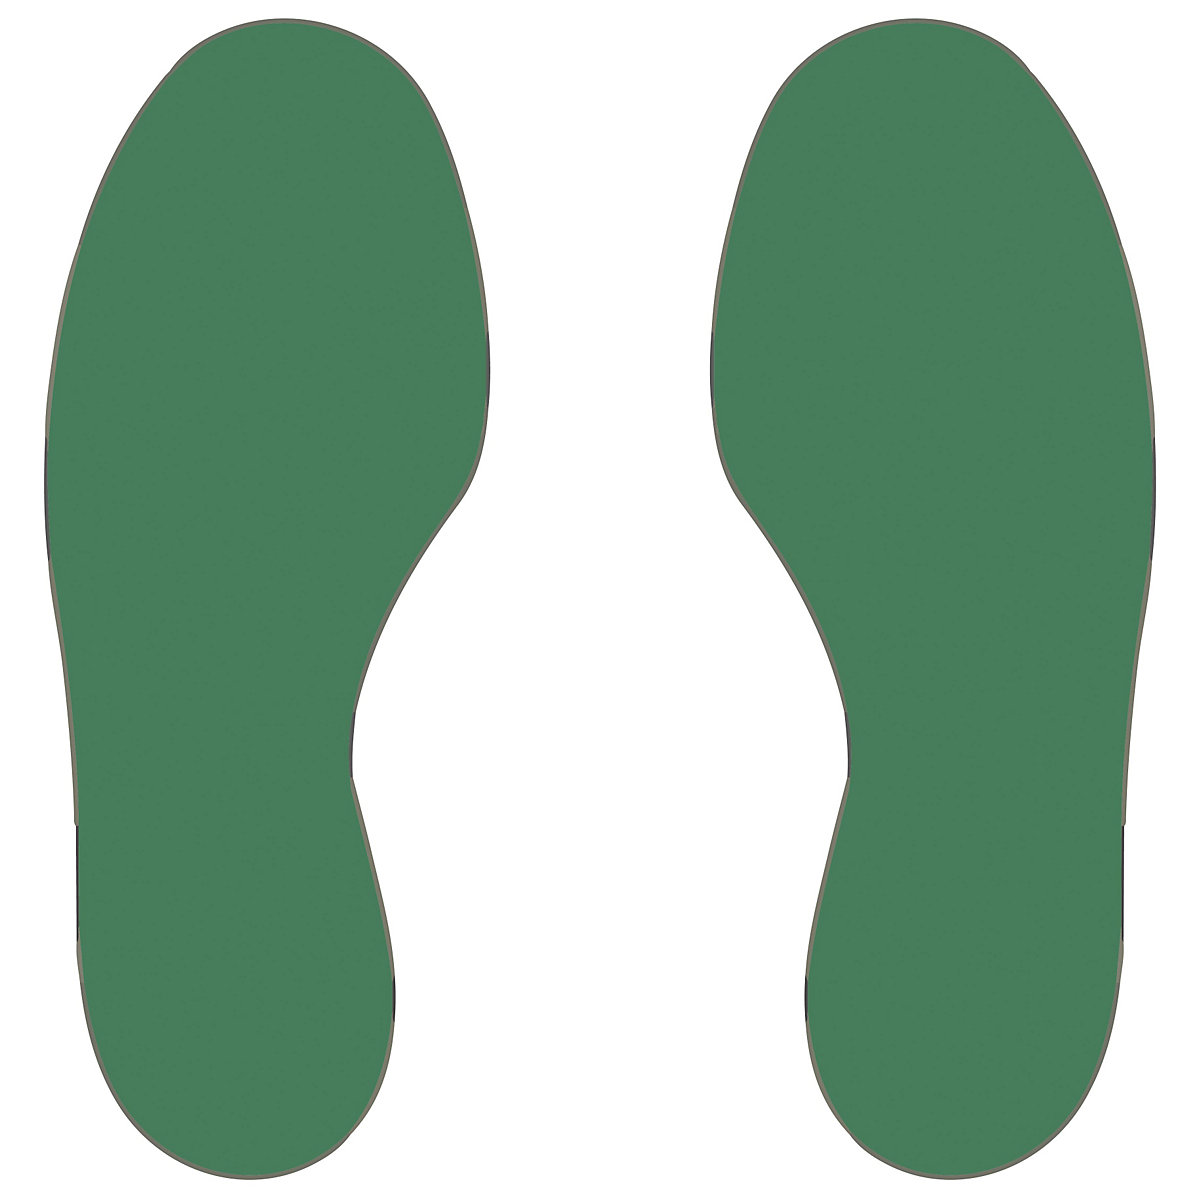 Marquages des sols en PVC, pieds, 5 droits / 5 gauches, lot de 10, vert